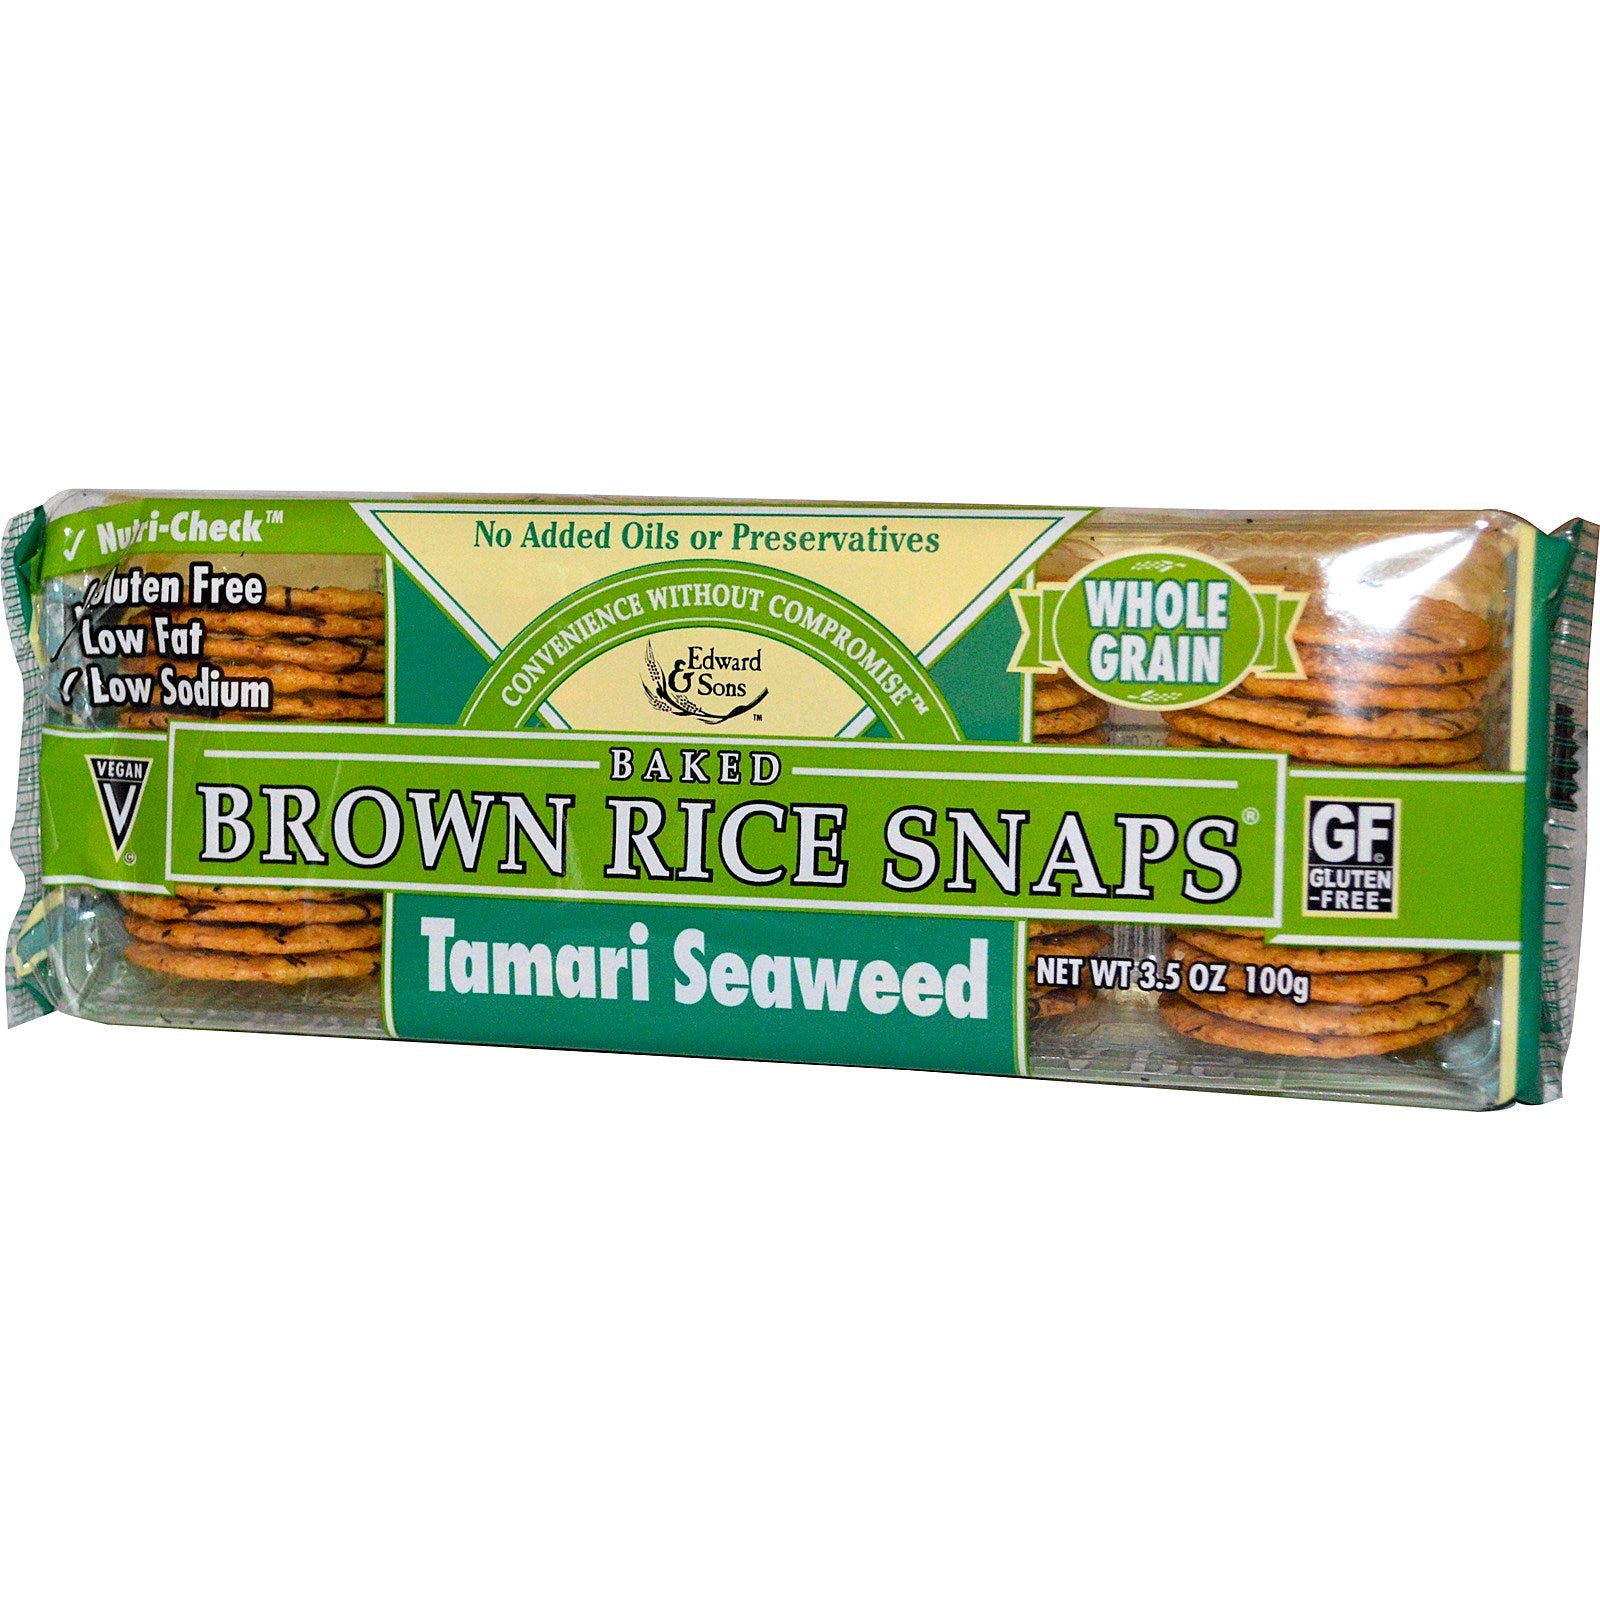 Edward & Sons, Baked Brown Rice Snaps, Tamari Seaweed, 3.5 oz